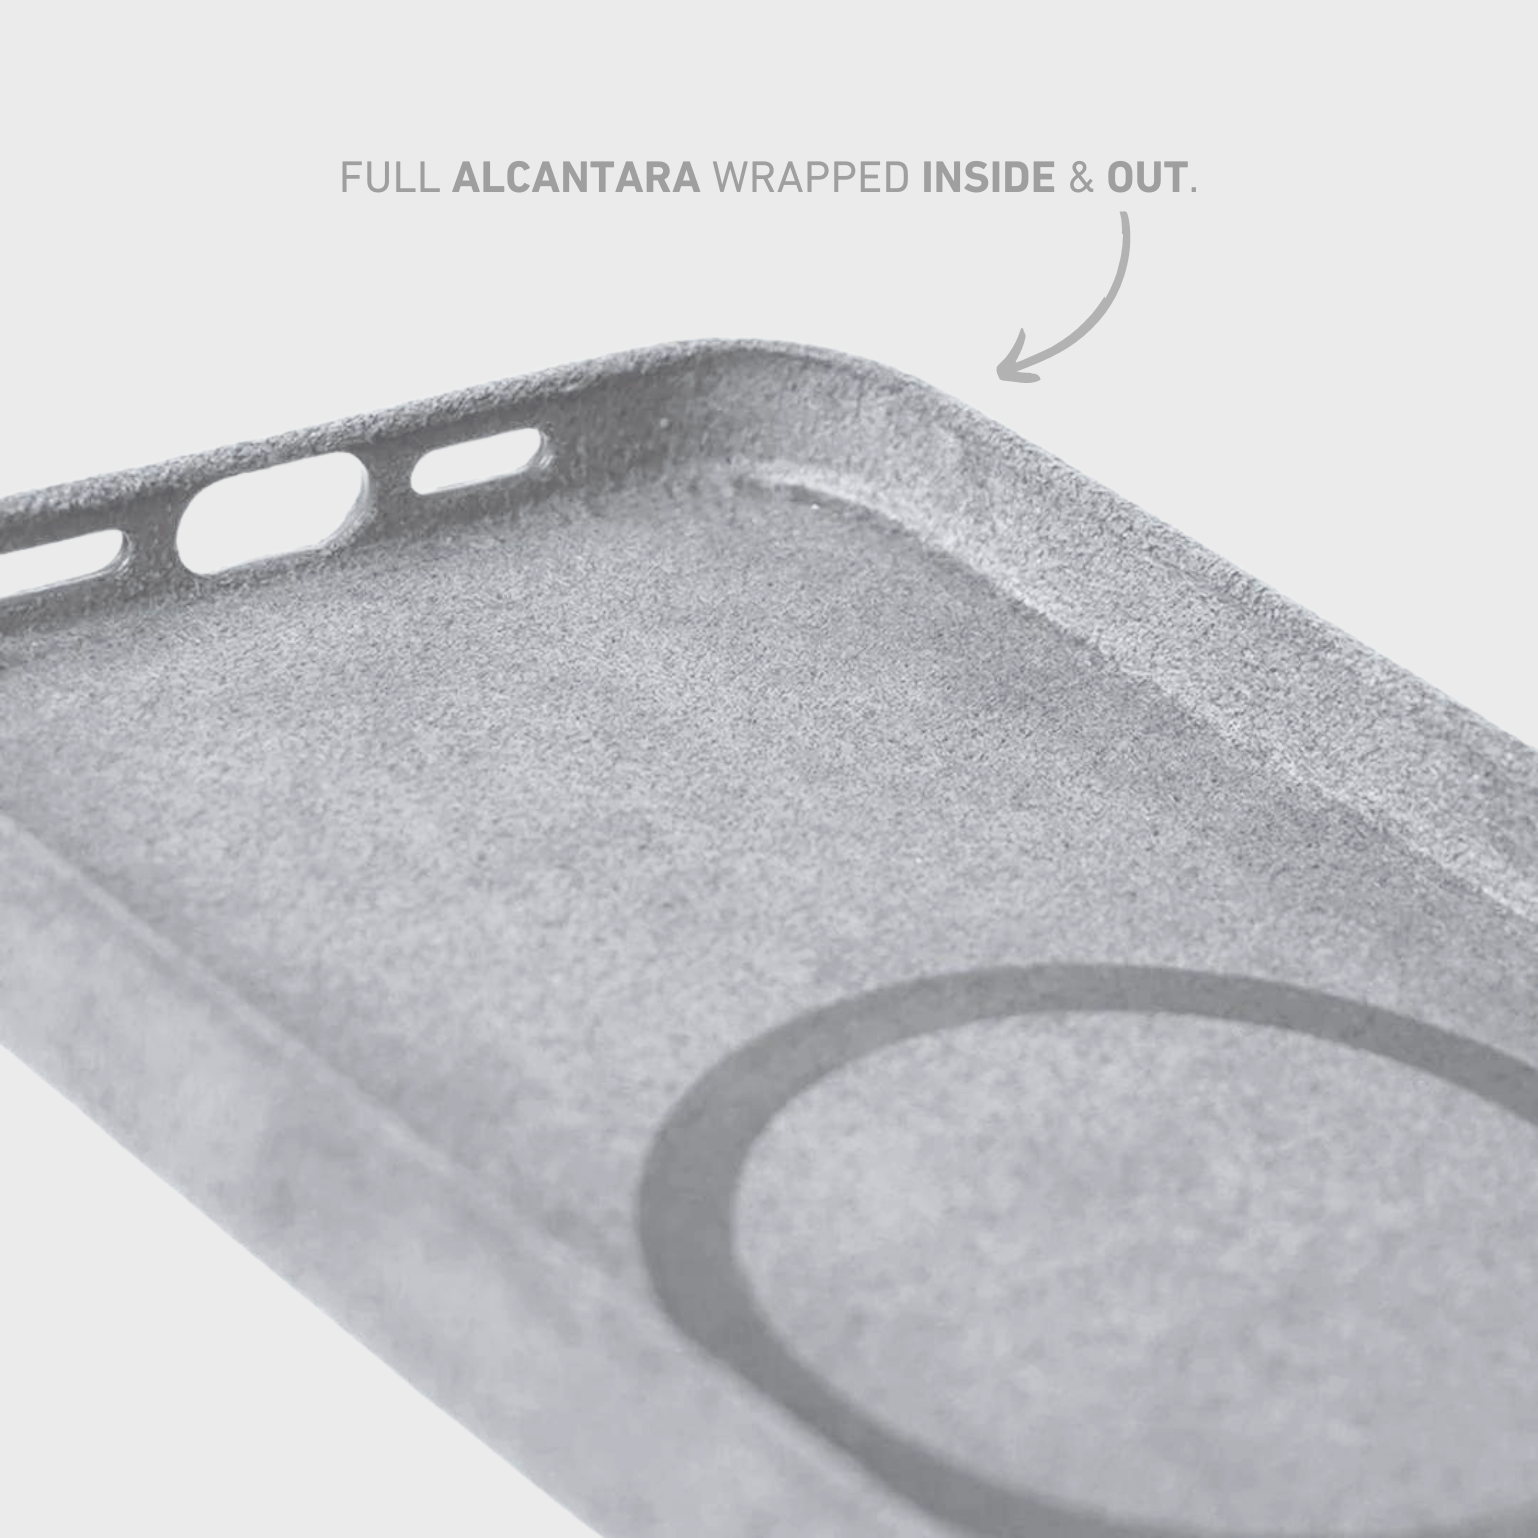 Alcantara iPhone Case + MagSafe Wallet + AirPod Case - Moon Gray Edition